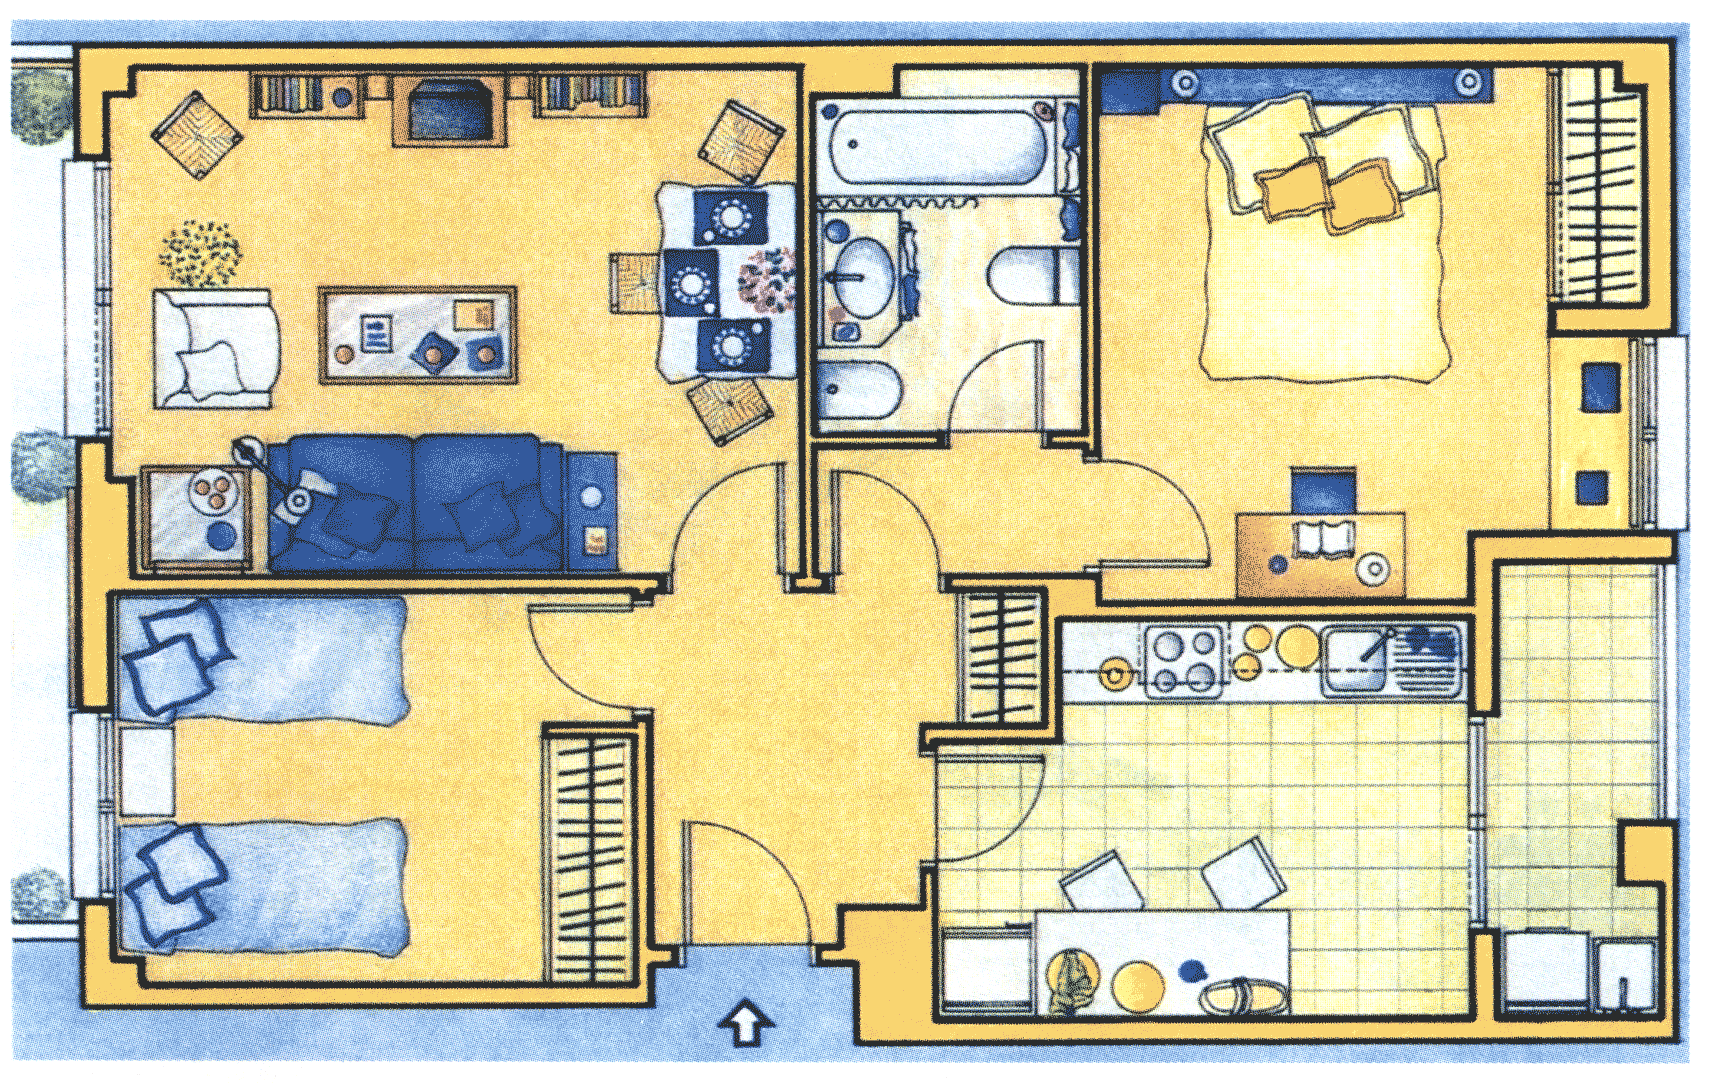 Где моя карта дома. Планировка мебели в доме. План комнаты. Планировка квартиры с мебелью вид сверху. Нарисовать план квартиры.